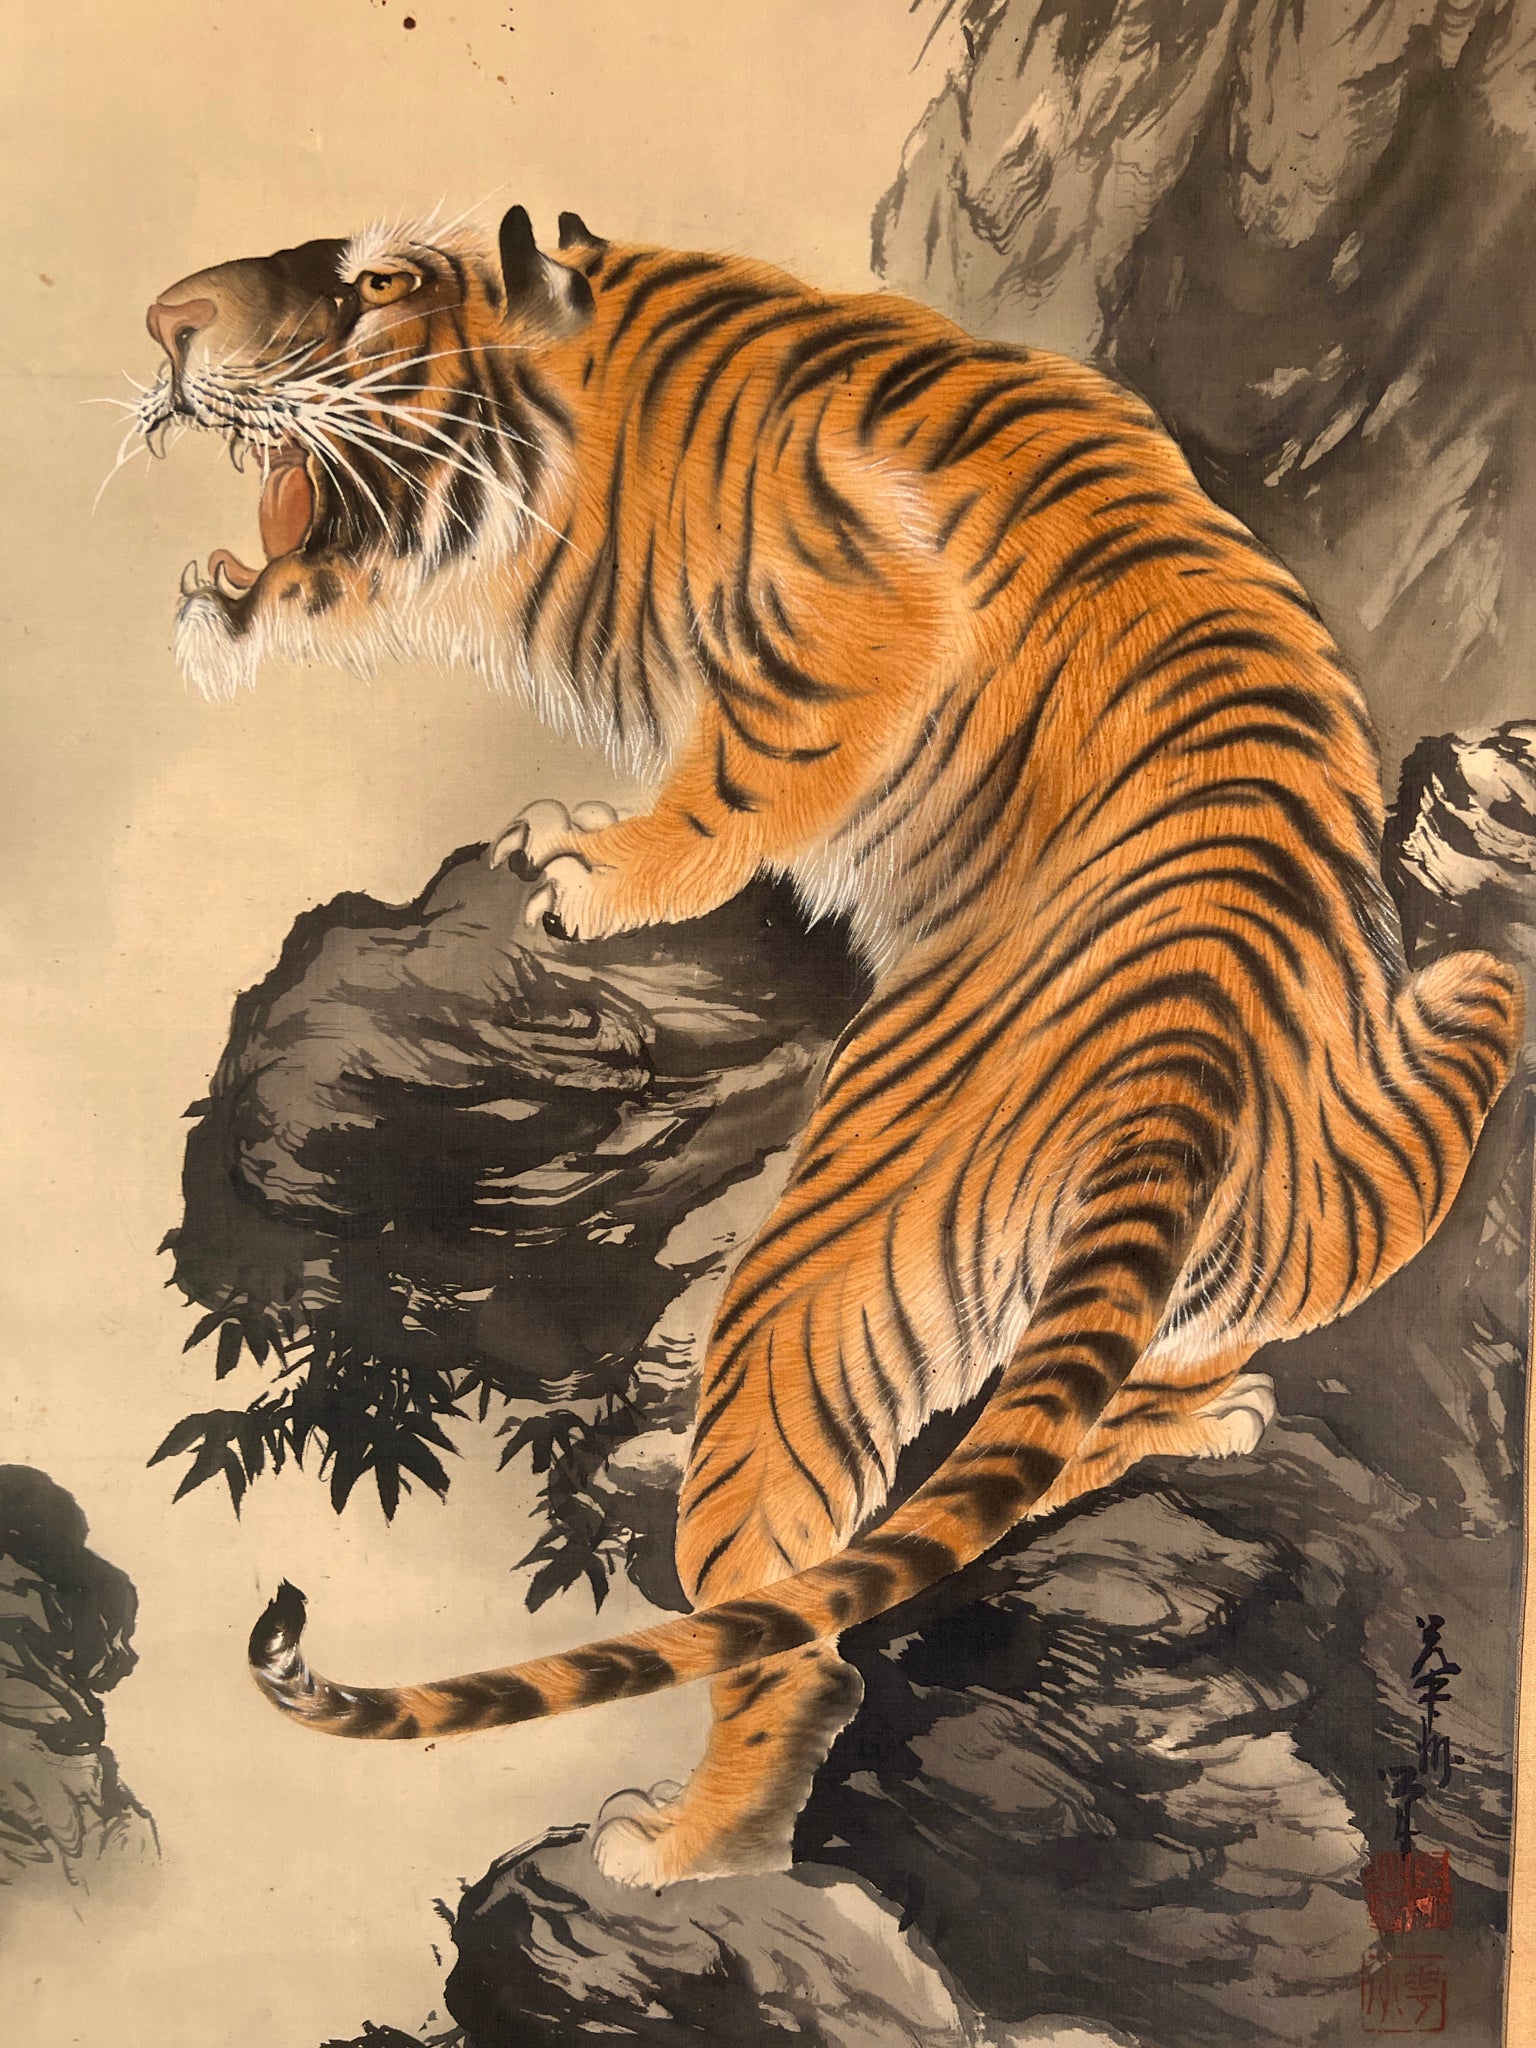 kakejiku japonais rouleau suspendu tigre rugissant, gros plan sur le tigre